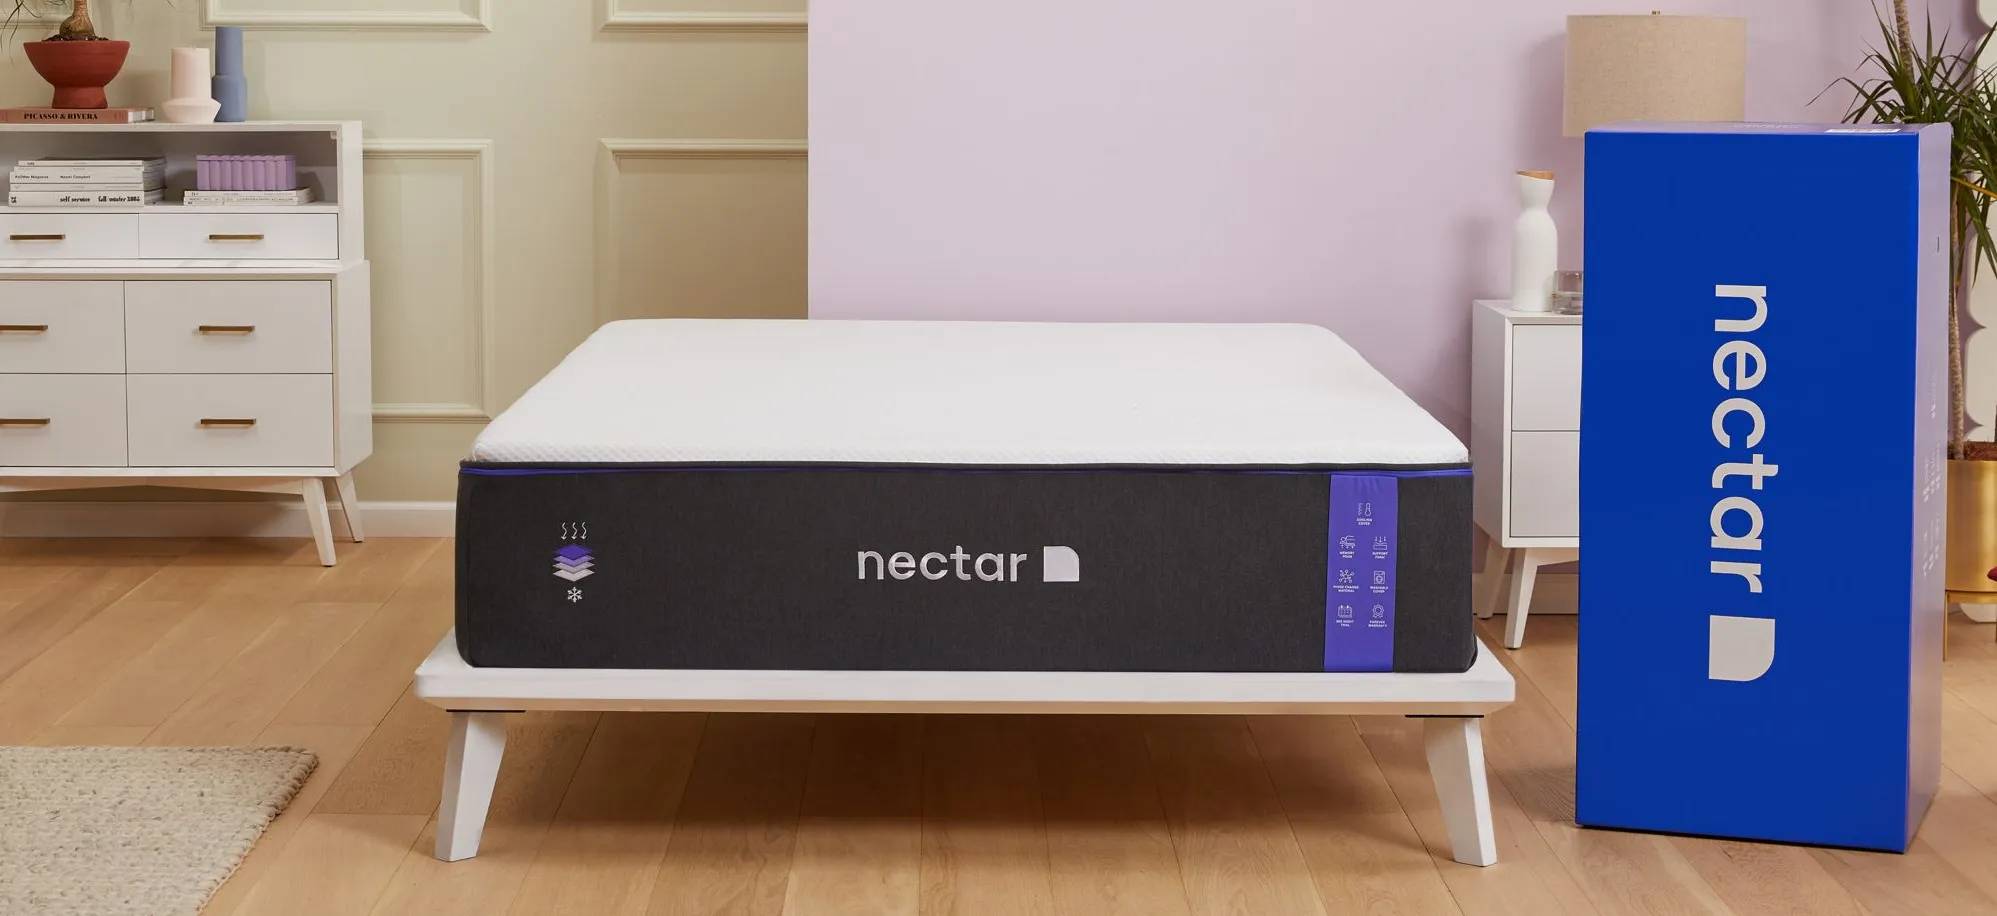 Nectar Premier Mattress by Nectar Brand